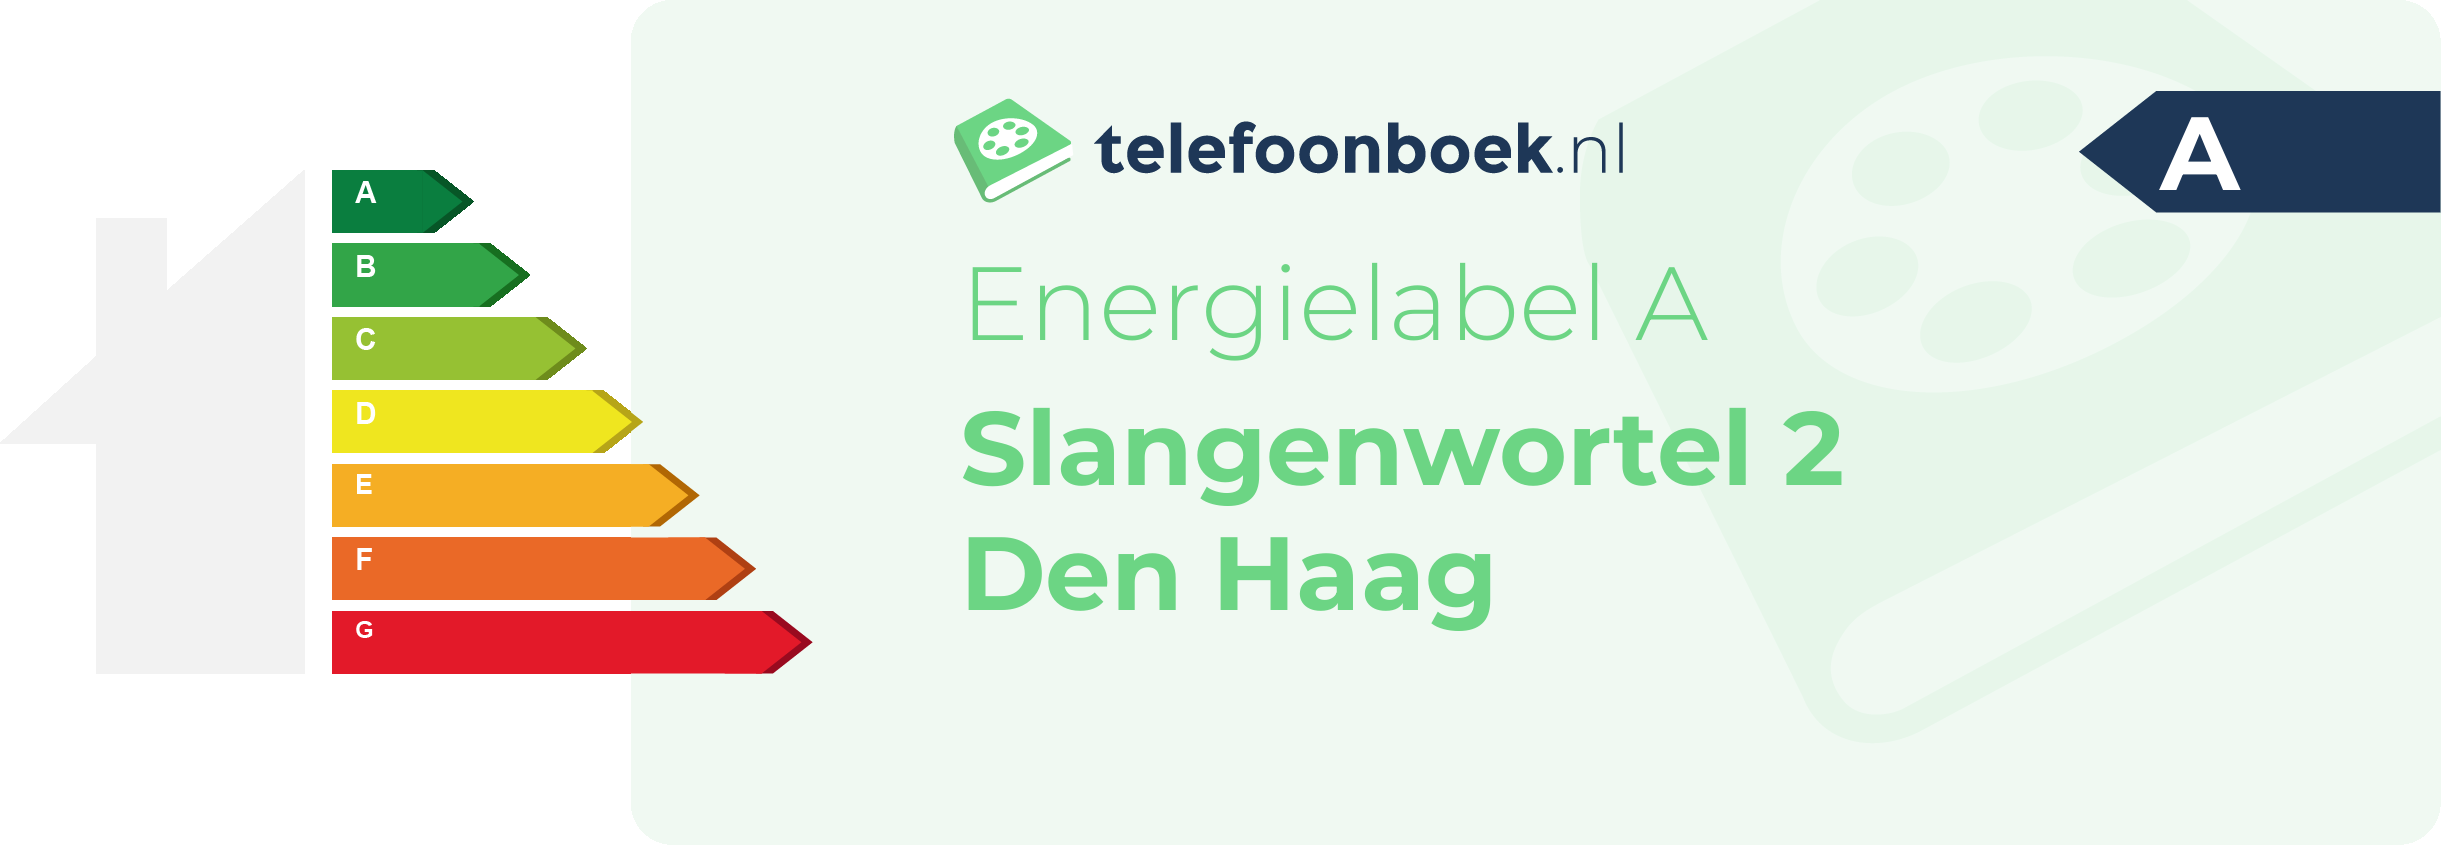 Energielabel Slangenwortel 2 Den Haag